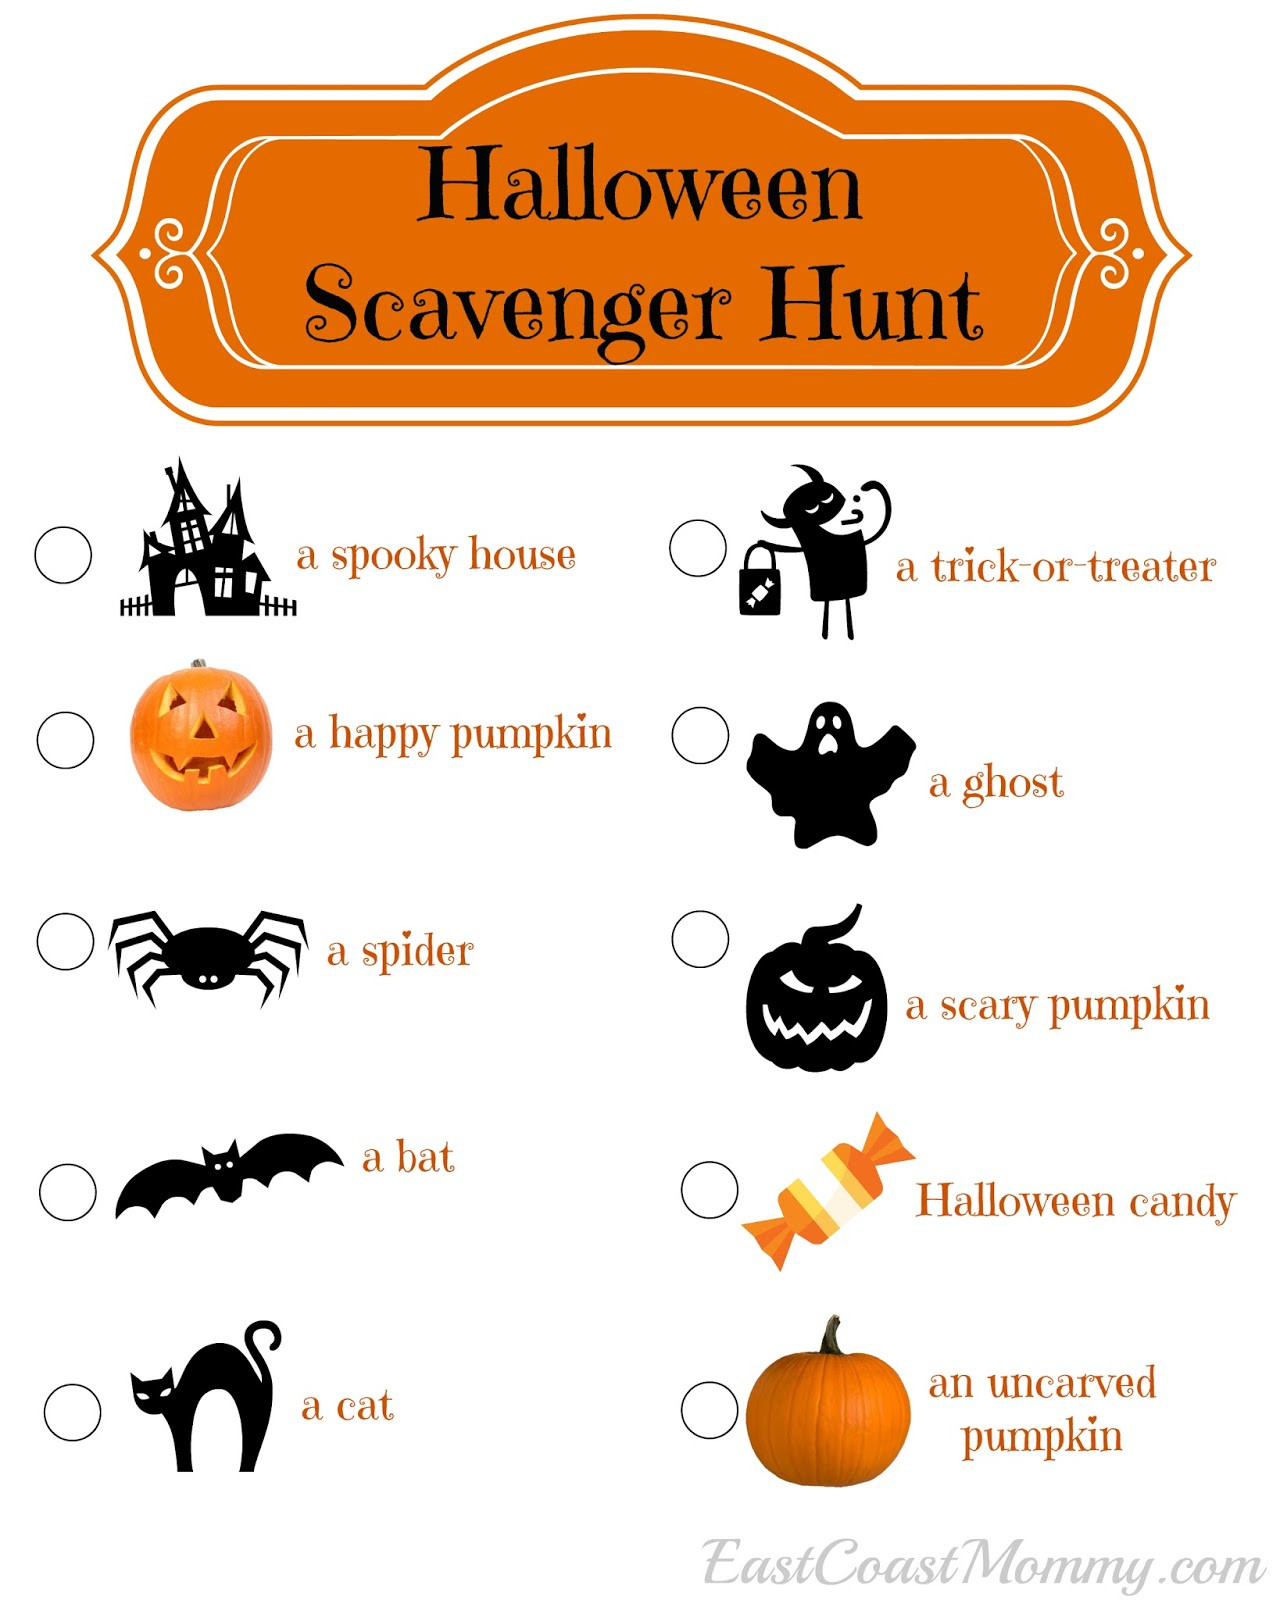 Halloween Scavenger Hunt Ideas
 East Coast Mommy Halloween Scavenger Hunt with free